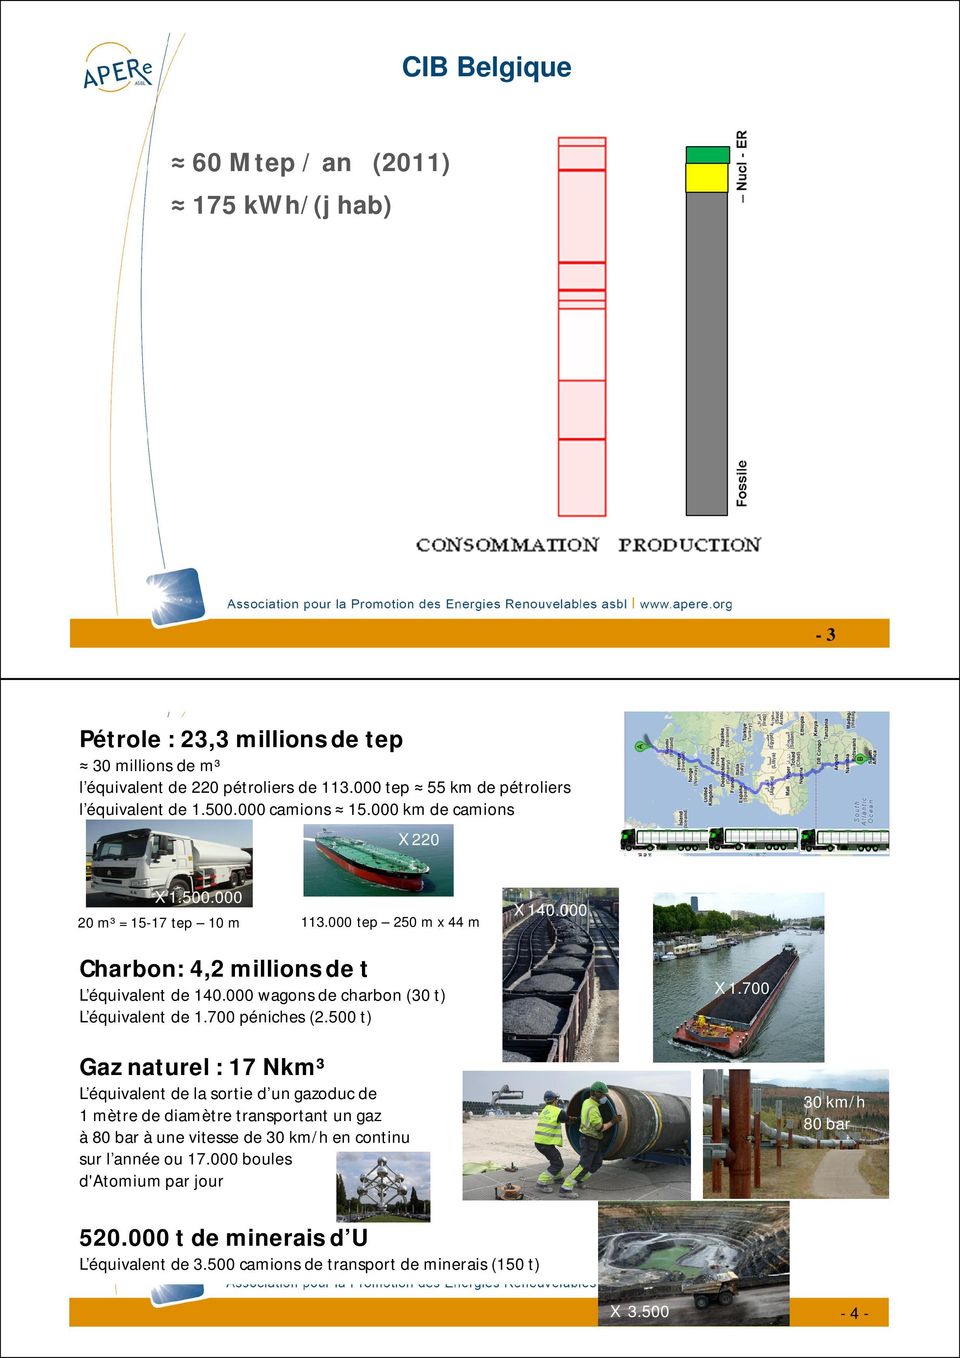 000 Charbon: 4,2 millions de t L équivalent de 140.000 wagons de charbon (30 t) L équivalent de 1.700 péniches (2.500 t) X 1.